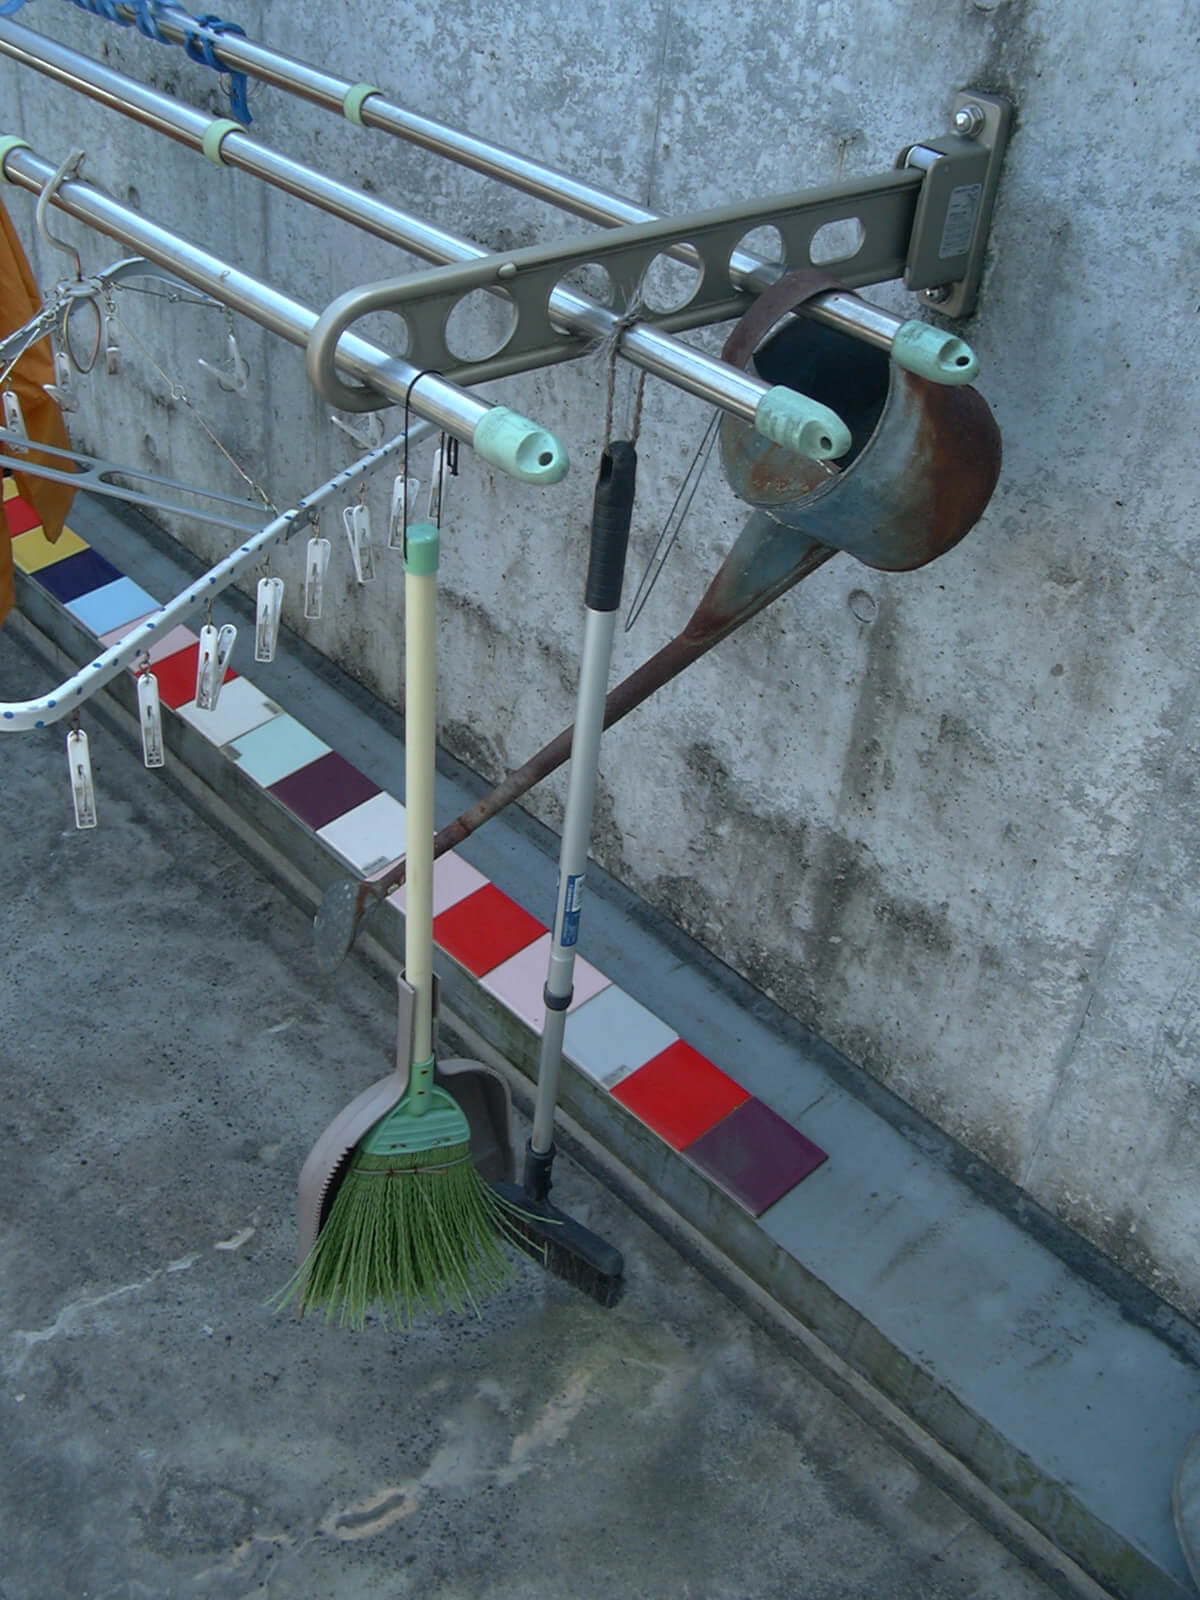 掃除したあと掛けて片付けられるように、物干し竿にフックでほうきなどの掃除用具を取り付けています